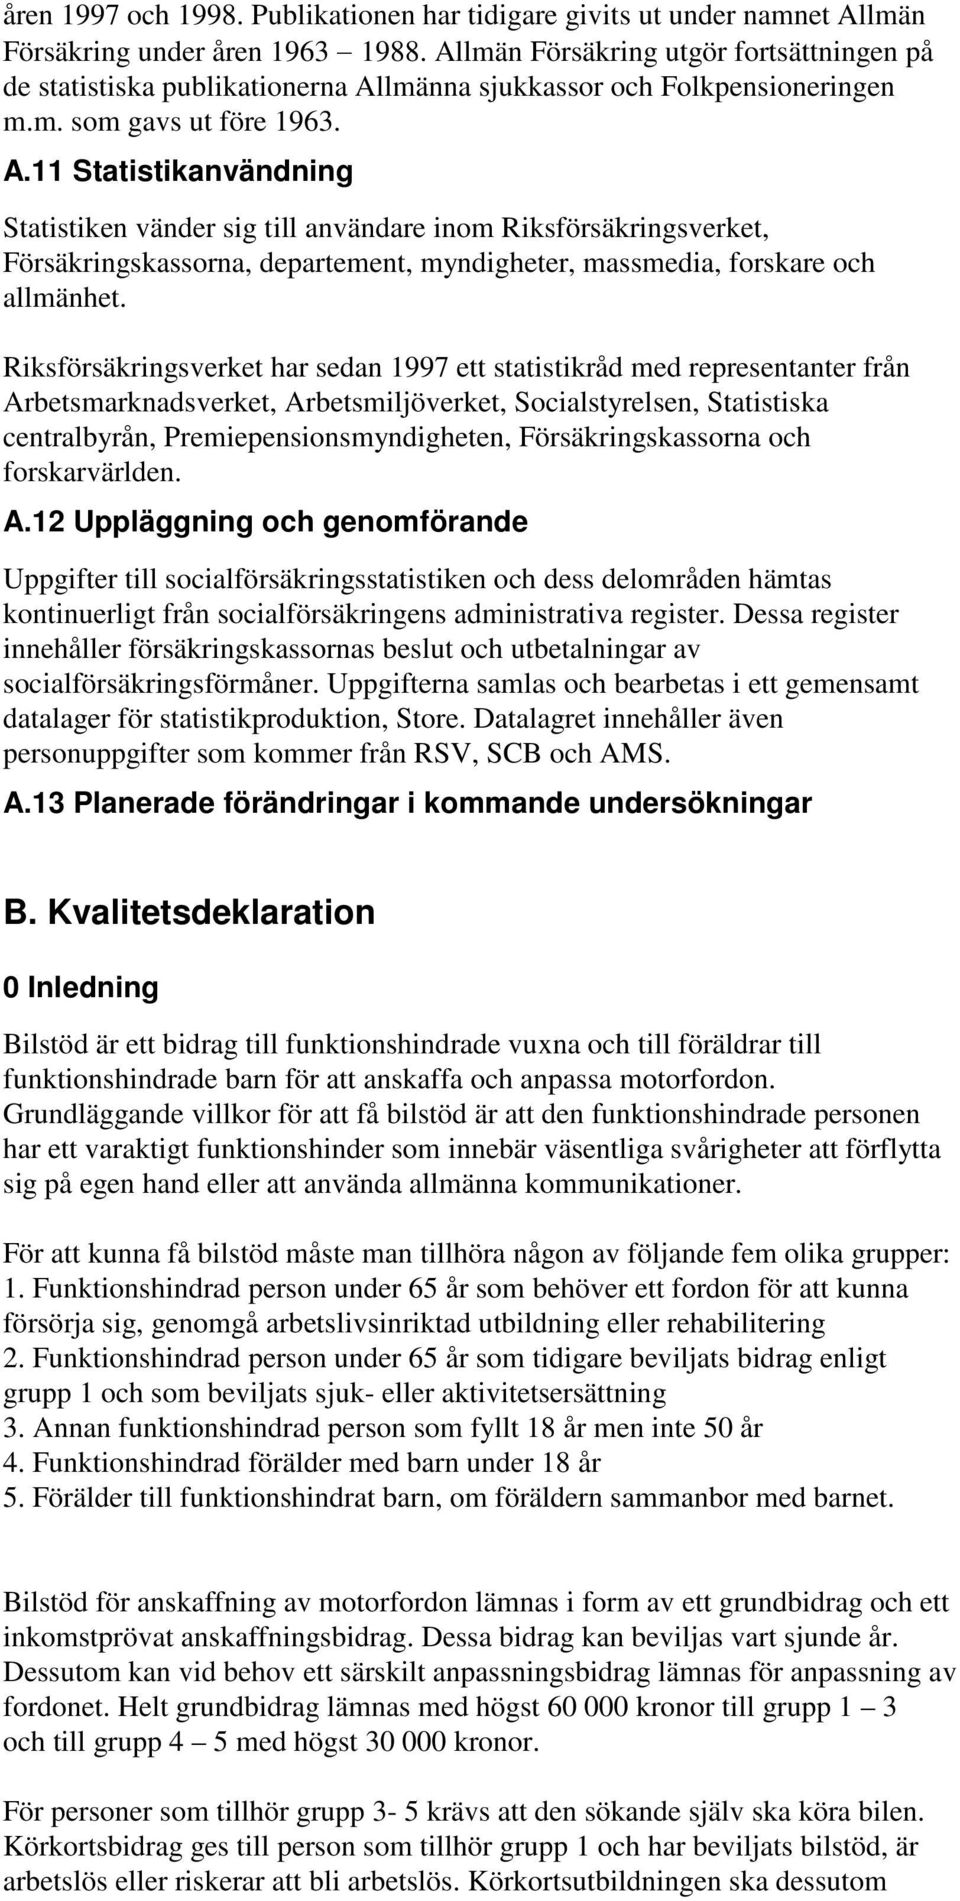 lmänna sjukkassor och Folkpensioneringen m.m. som gavs ut före 1963. A.